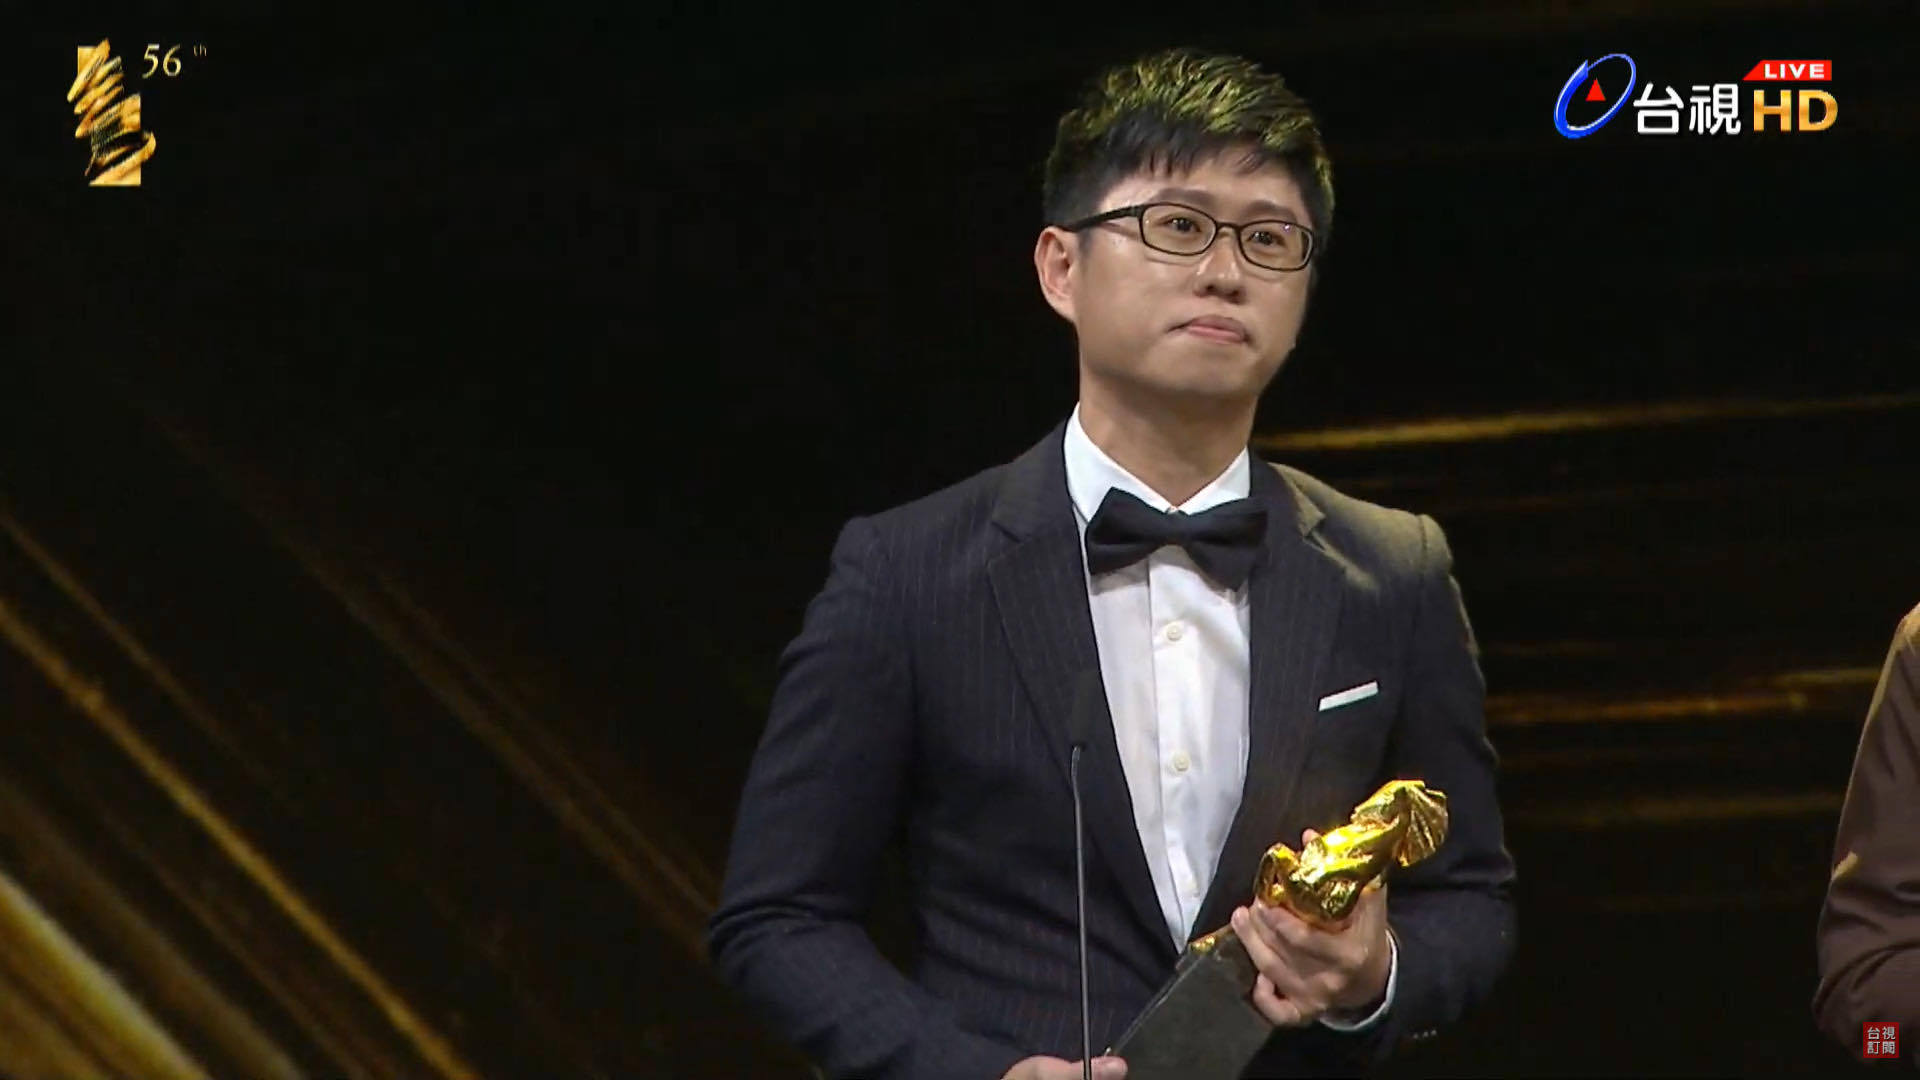 東華大學物理系校友范屹閔榮獲第56屆金馬獎最佳視覺效果獎